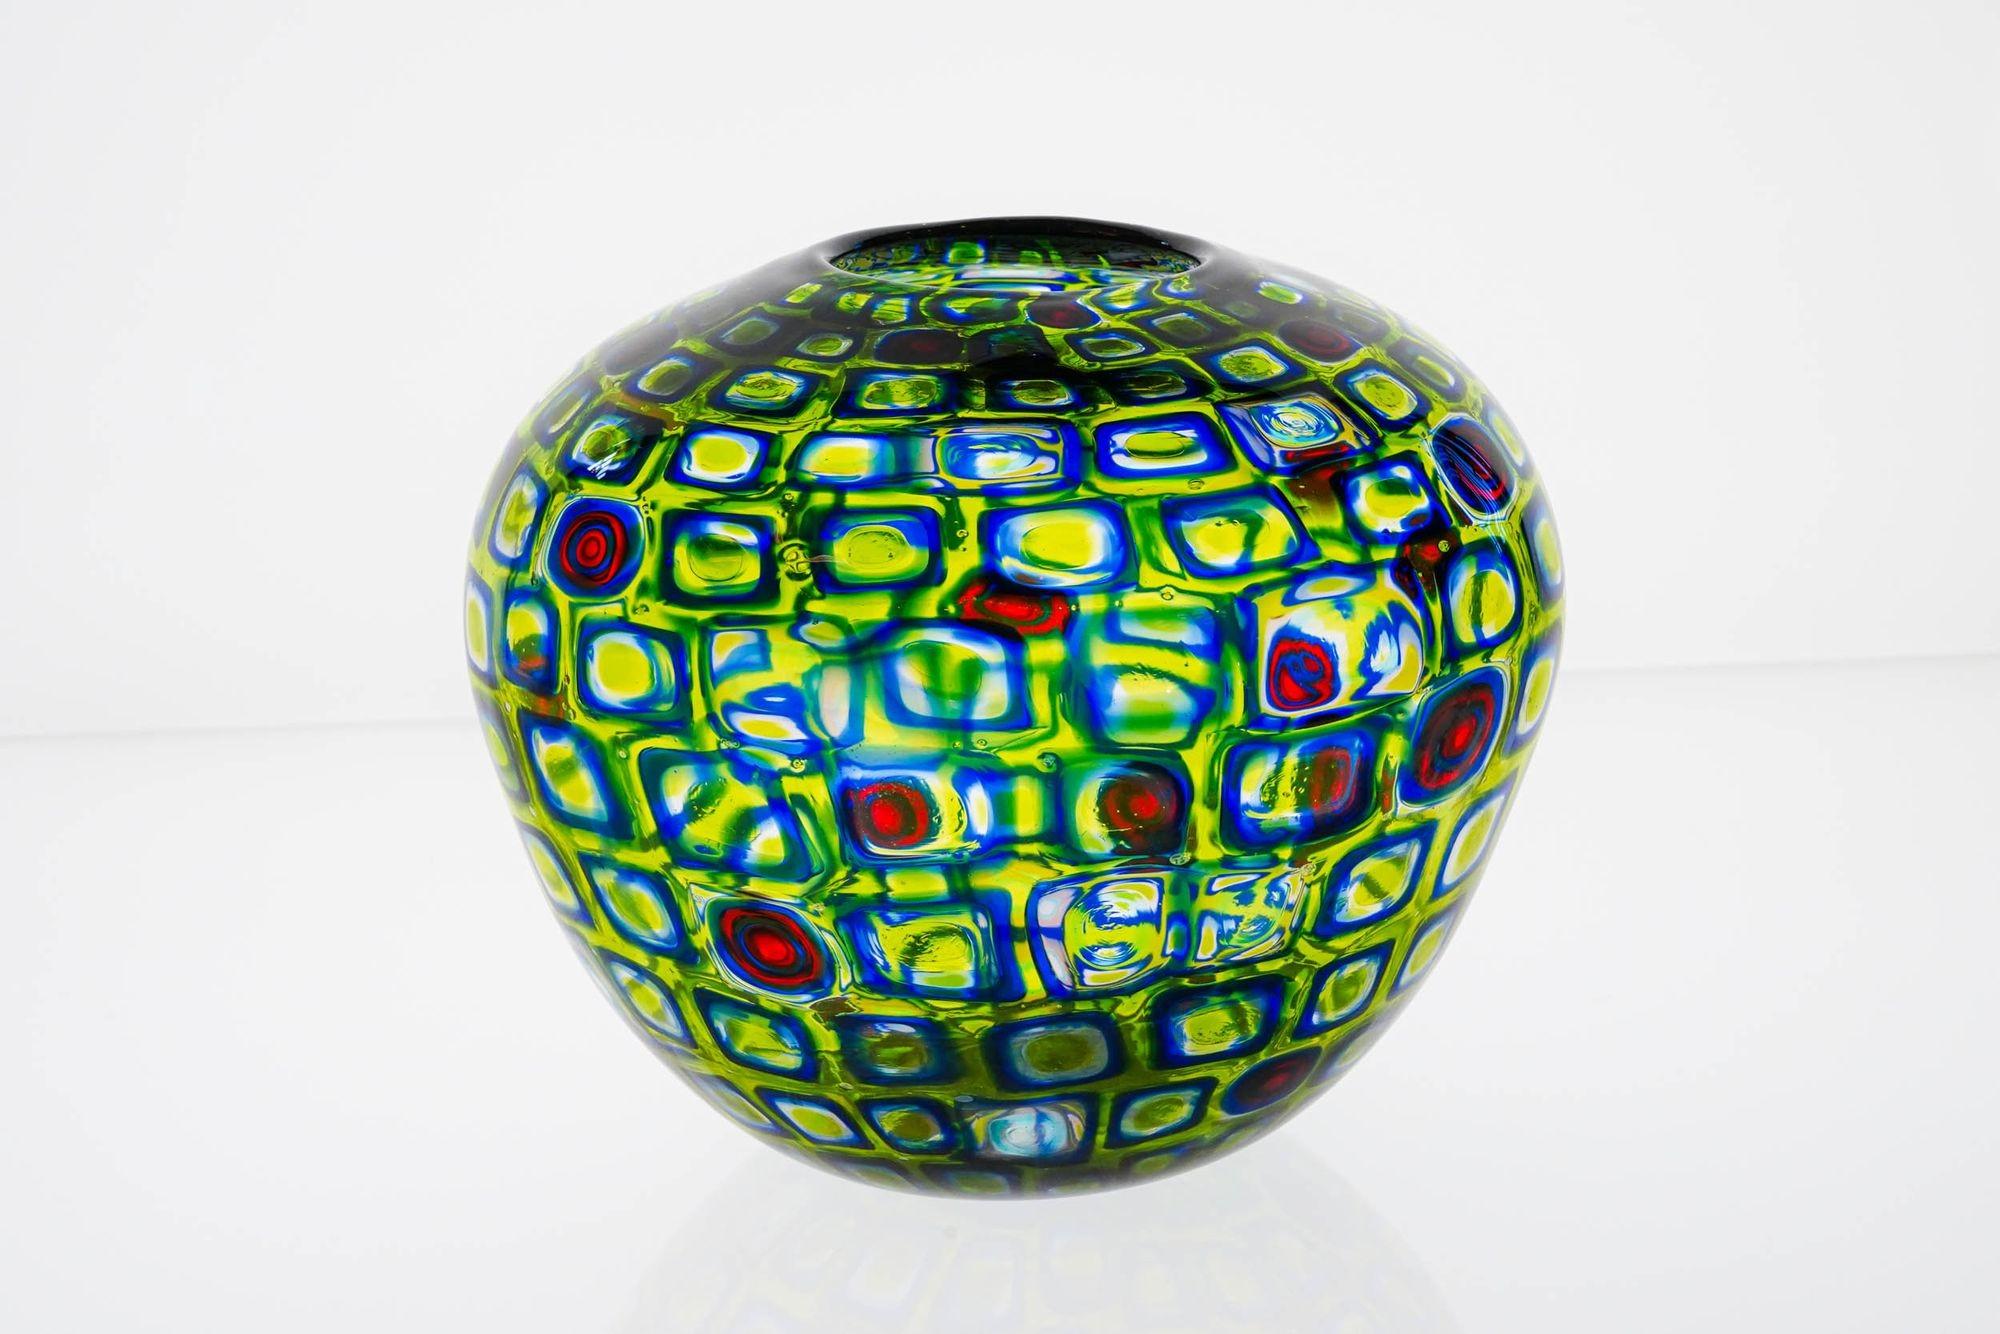 Prächtige Murrine-Vase. Potiche-Form mit schönem Farbspiel.
Die Murrine sind absichtlich von unterschiedlicher Art und Proportion gemacht. Die meisten sind blau mit grünem und gelbem Hintergrund, einige sind klar und blau. Hin und wieder gibt es